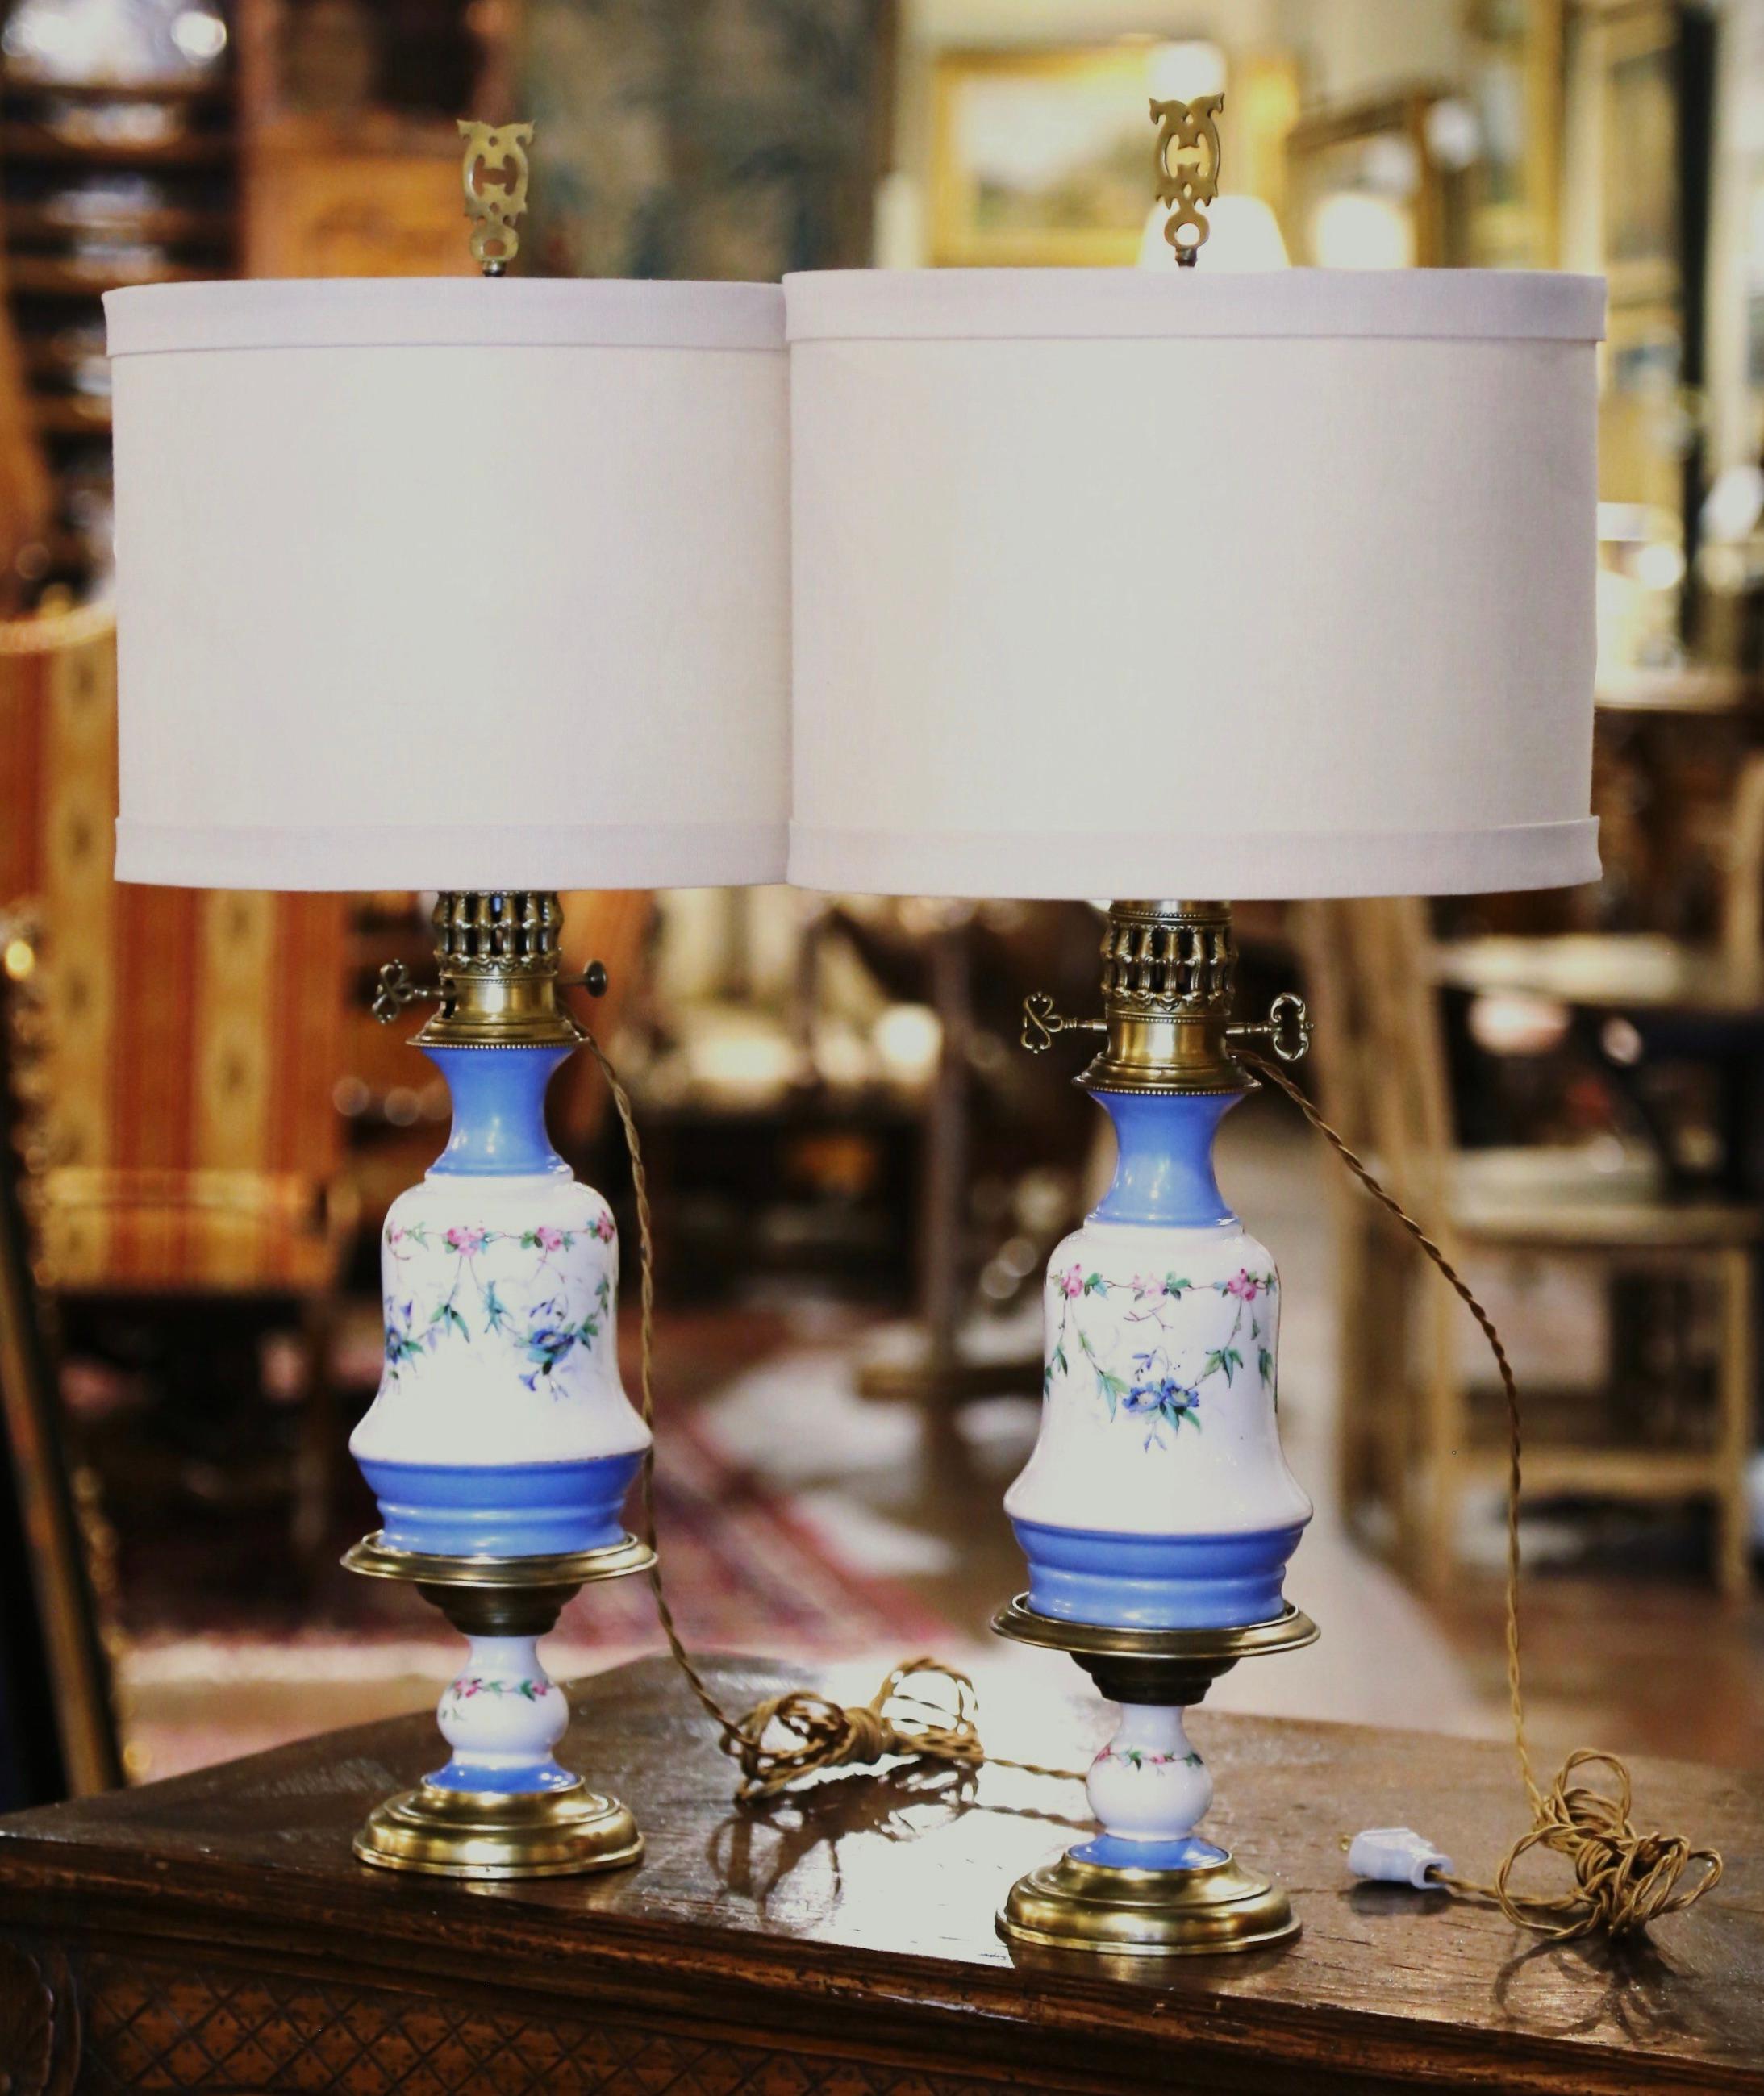 Ces élégantes lampes à huile anciennes ont été fabriquées en France, vers 1870. Les 